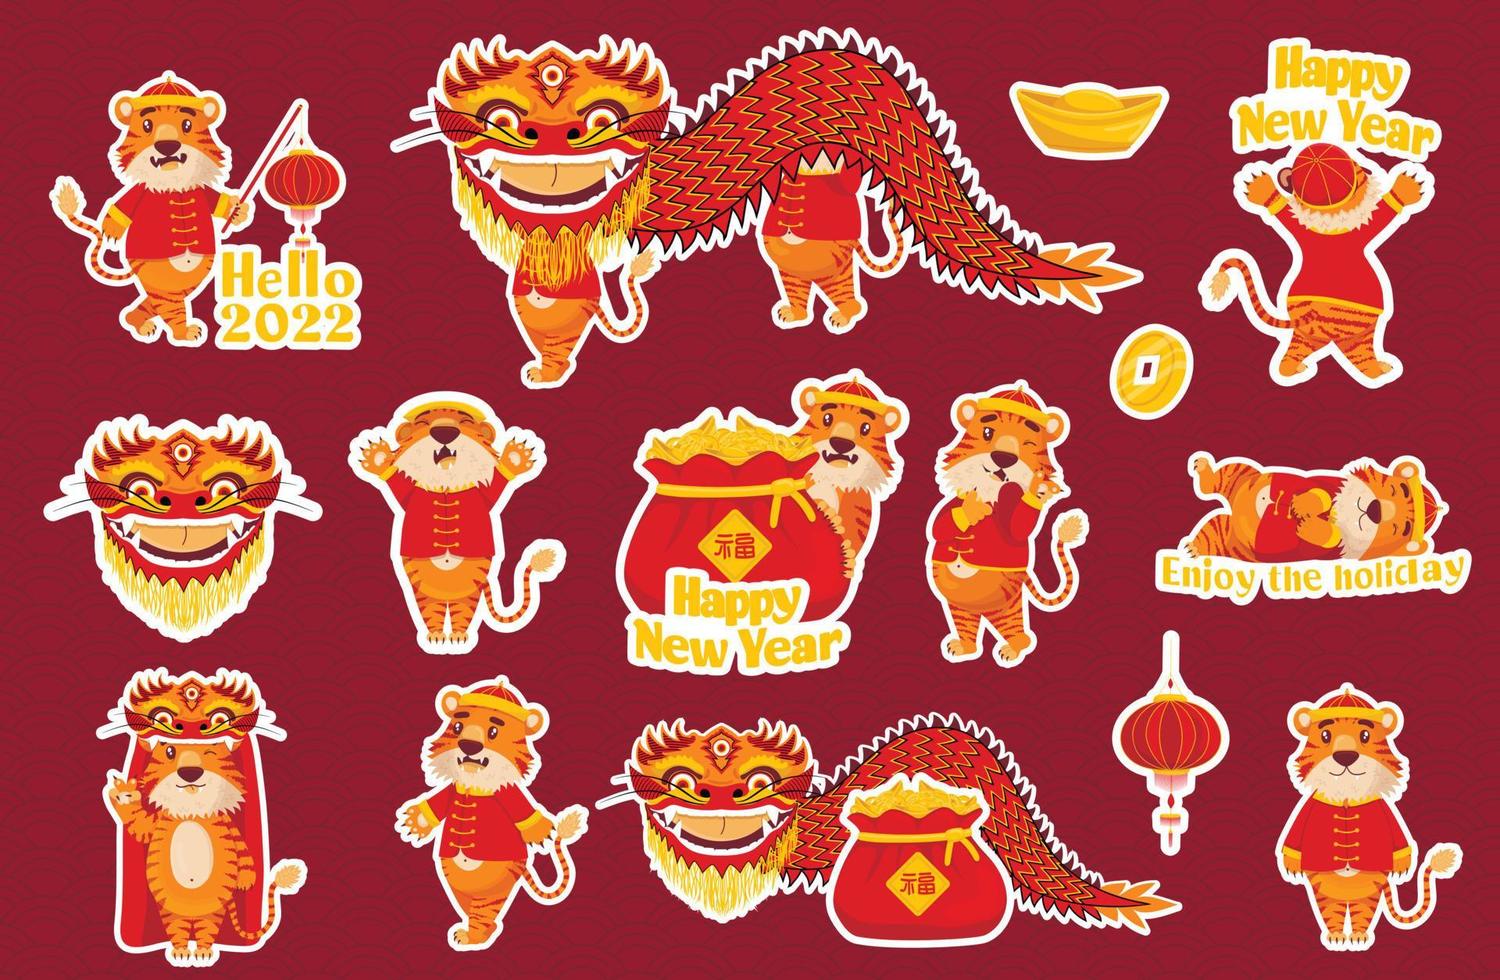 grote set stickers met rode chinese tijgers in nieuwjaarskostuums met lantaarns en draken in cartoonstijl. vector